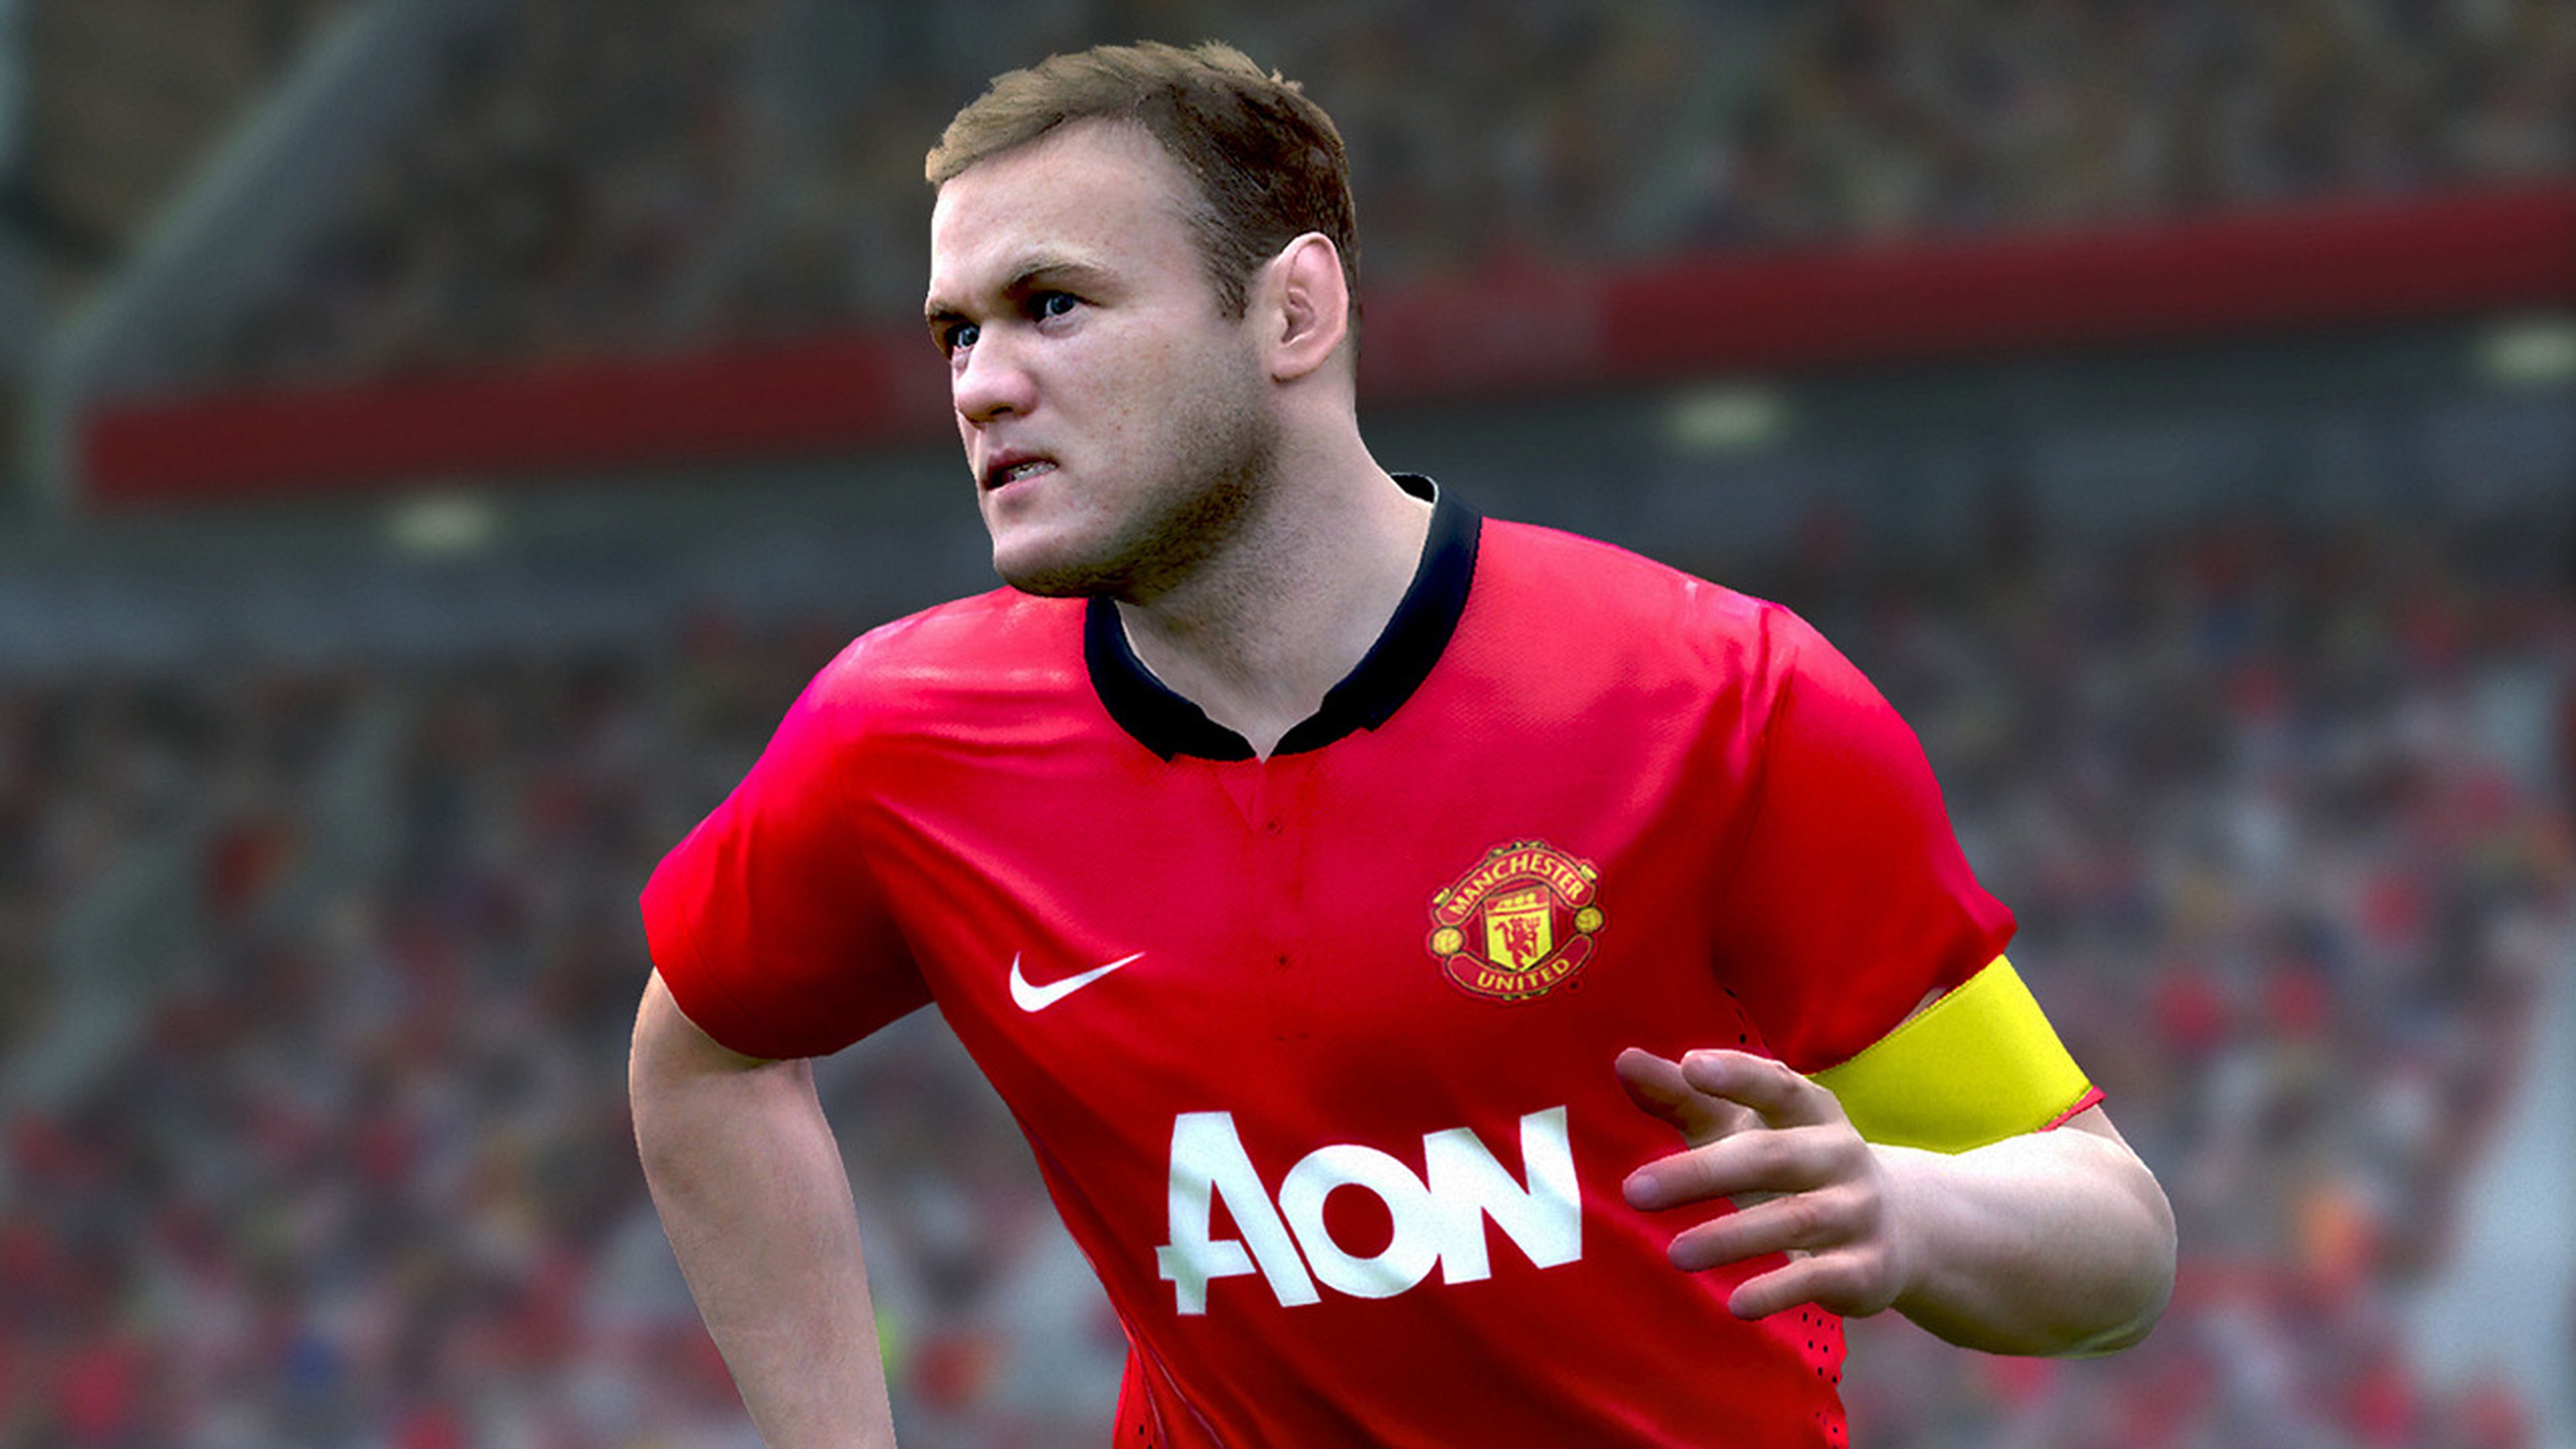 La resolución de Pro Evolution Soccer 15 en PS4 y Xbox One